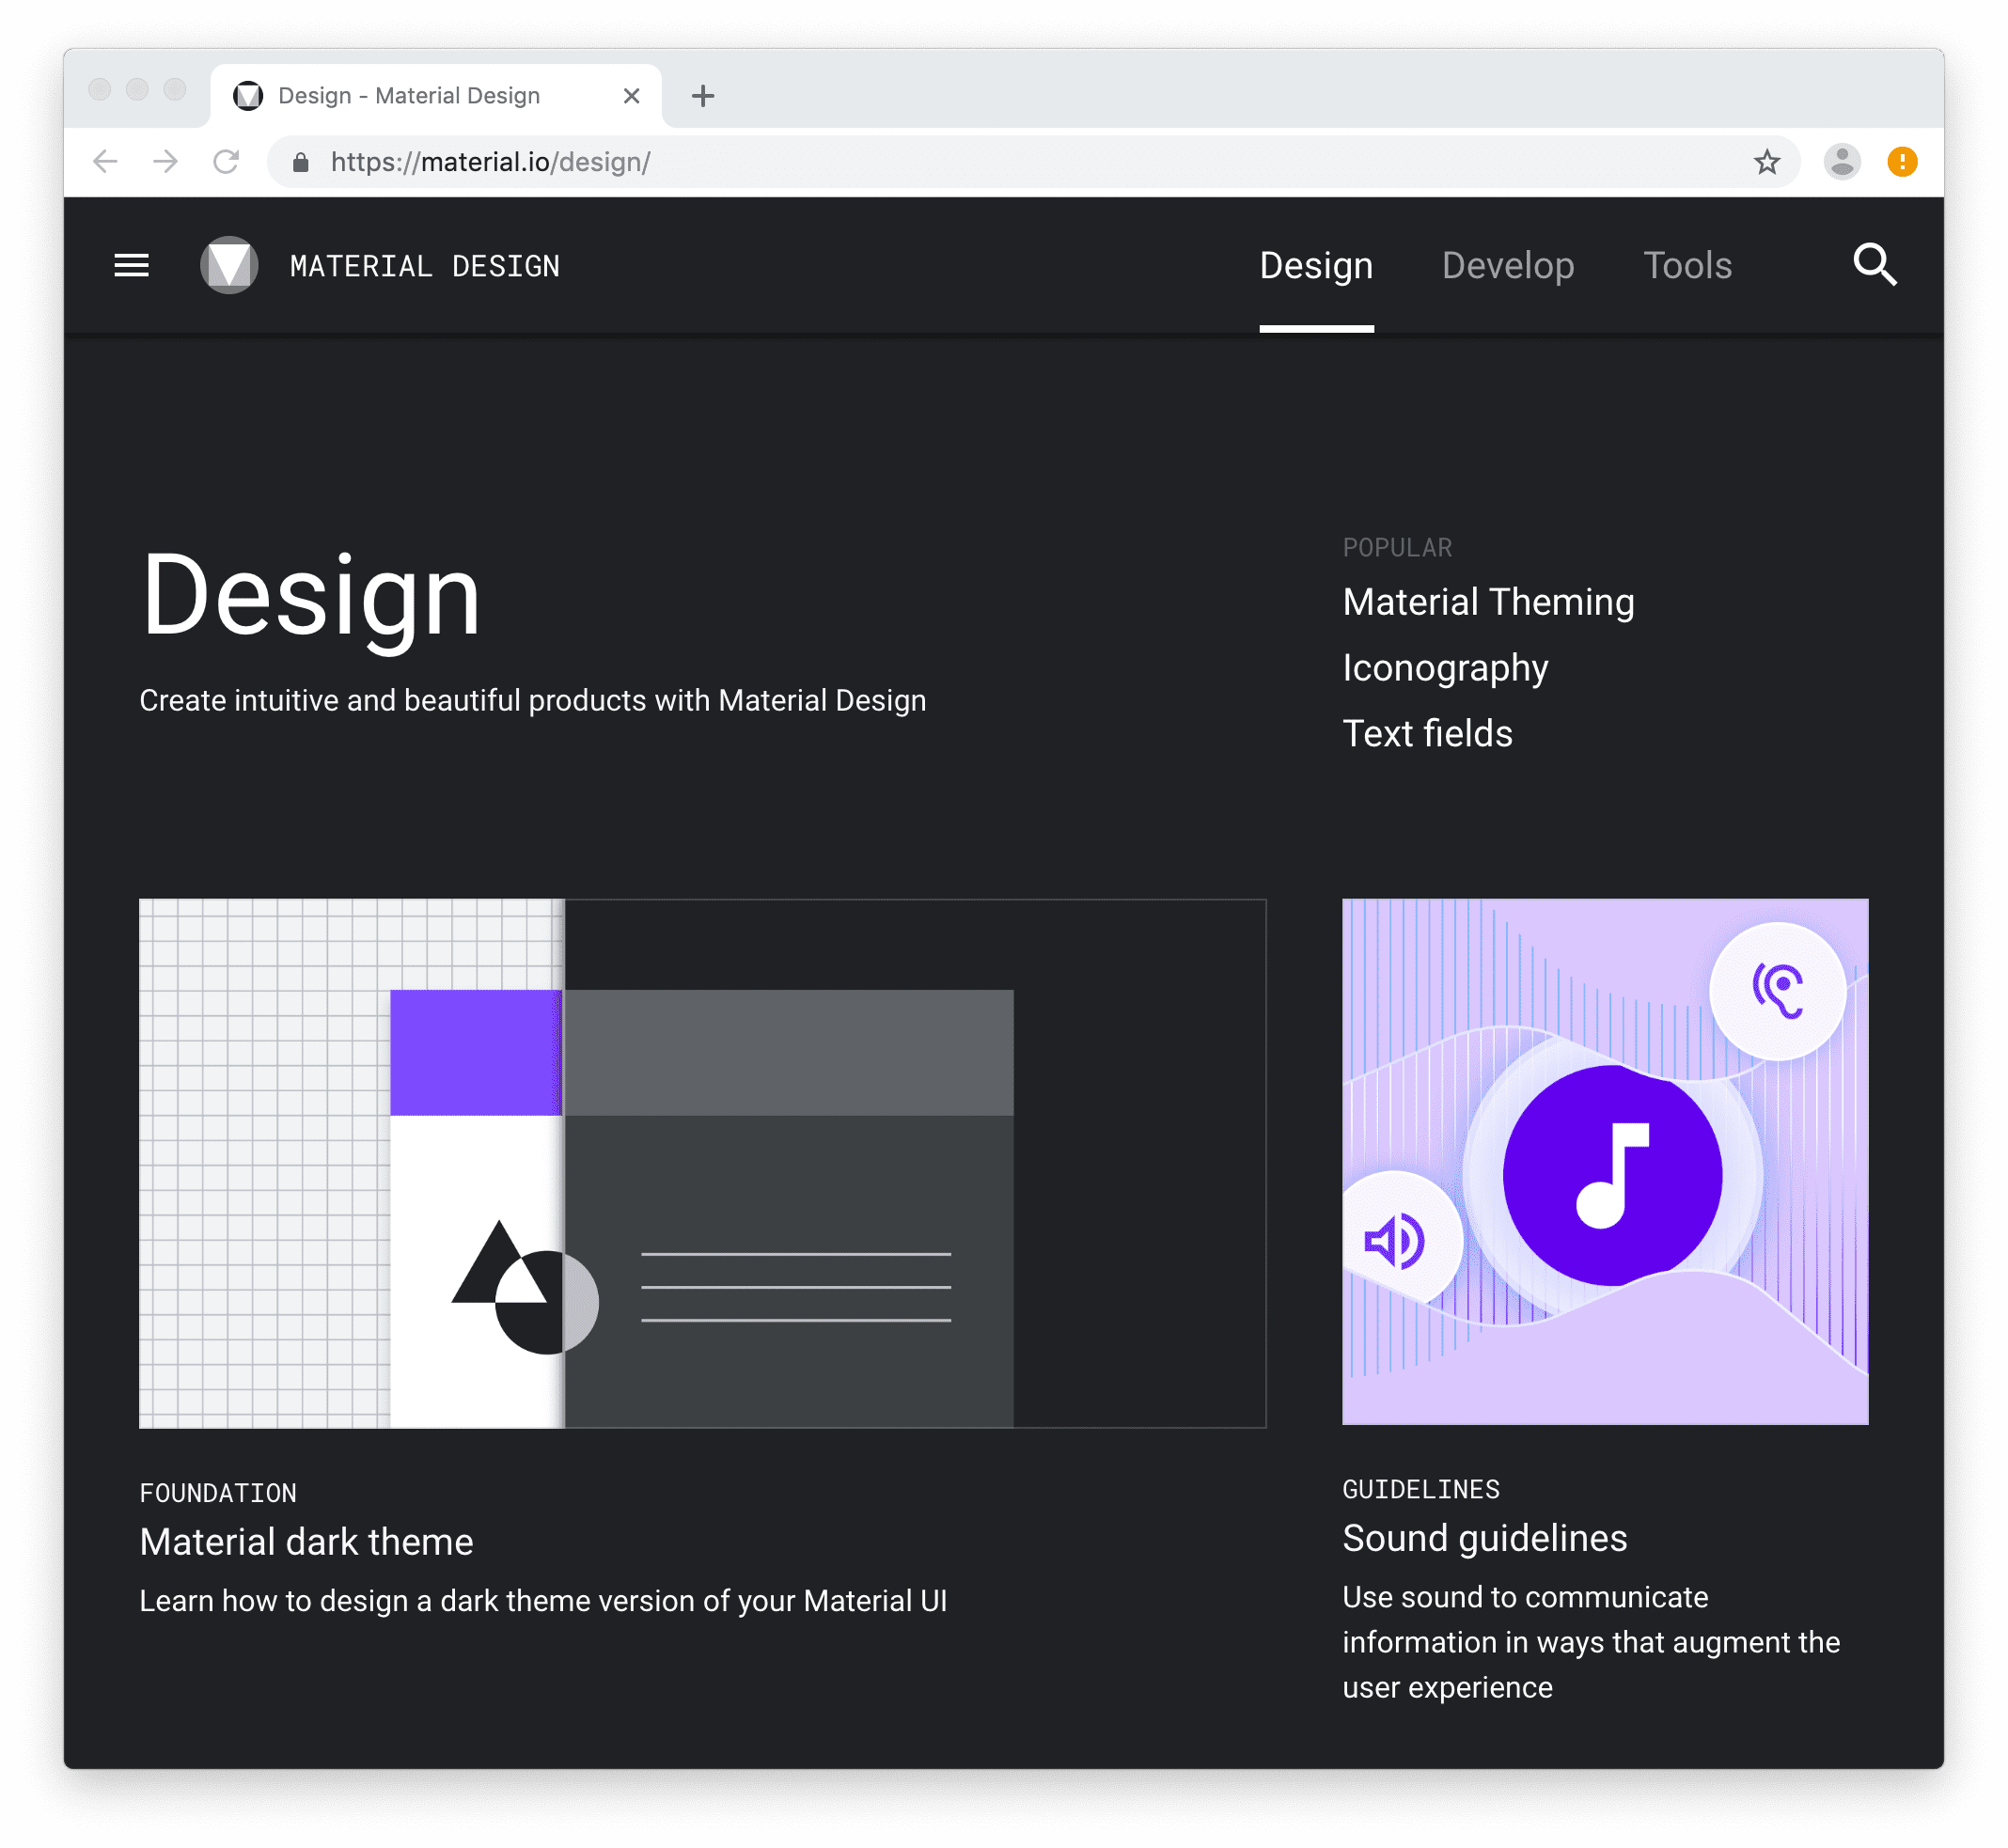 Trang chủ Material Design, https://material.io.